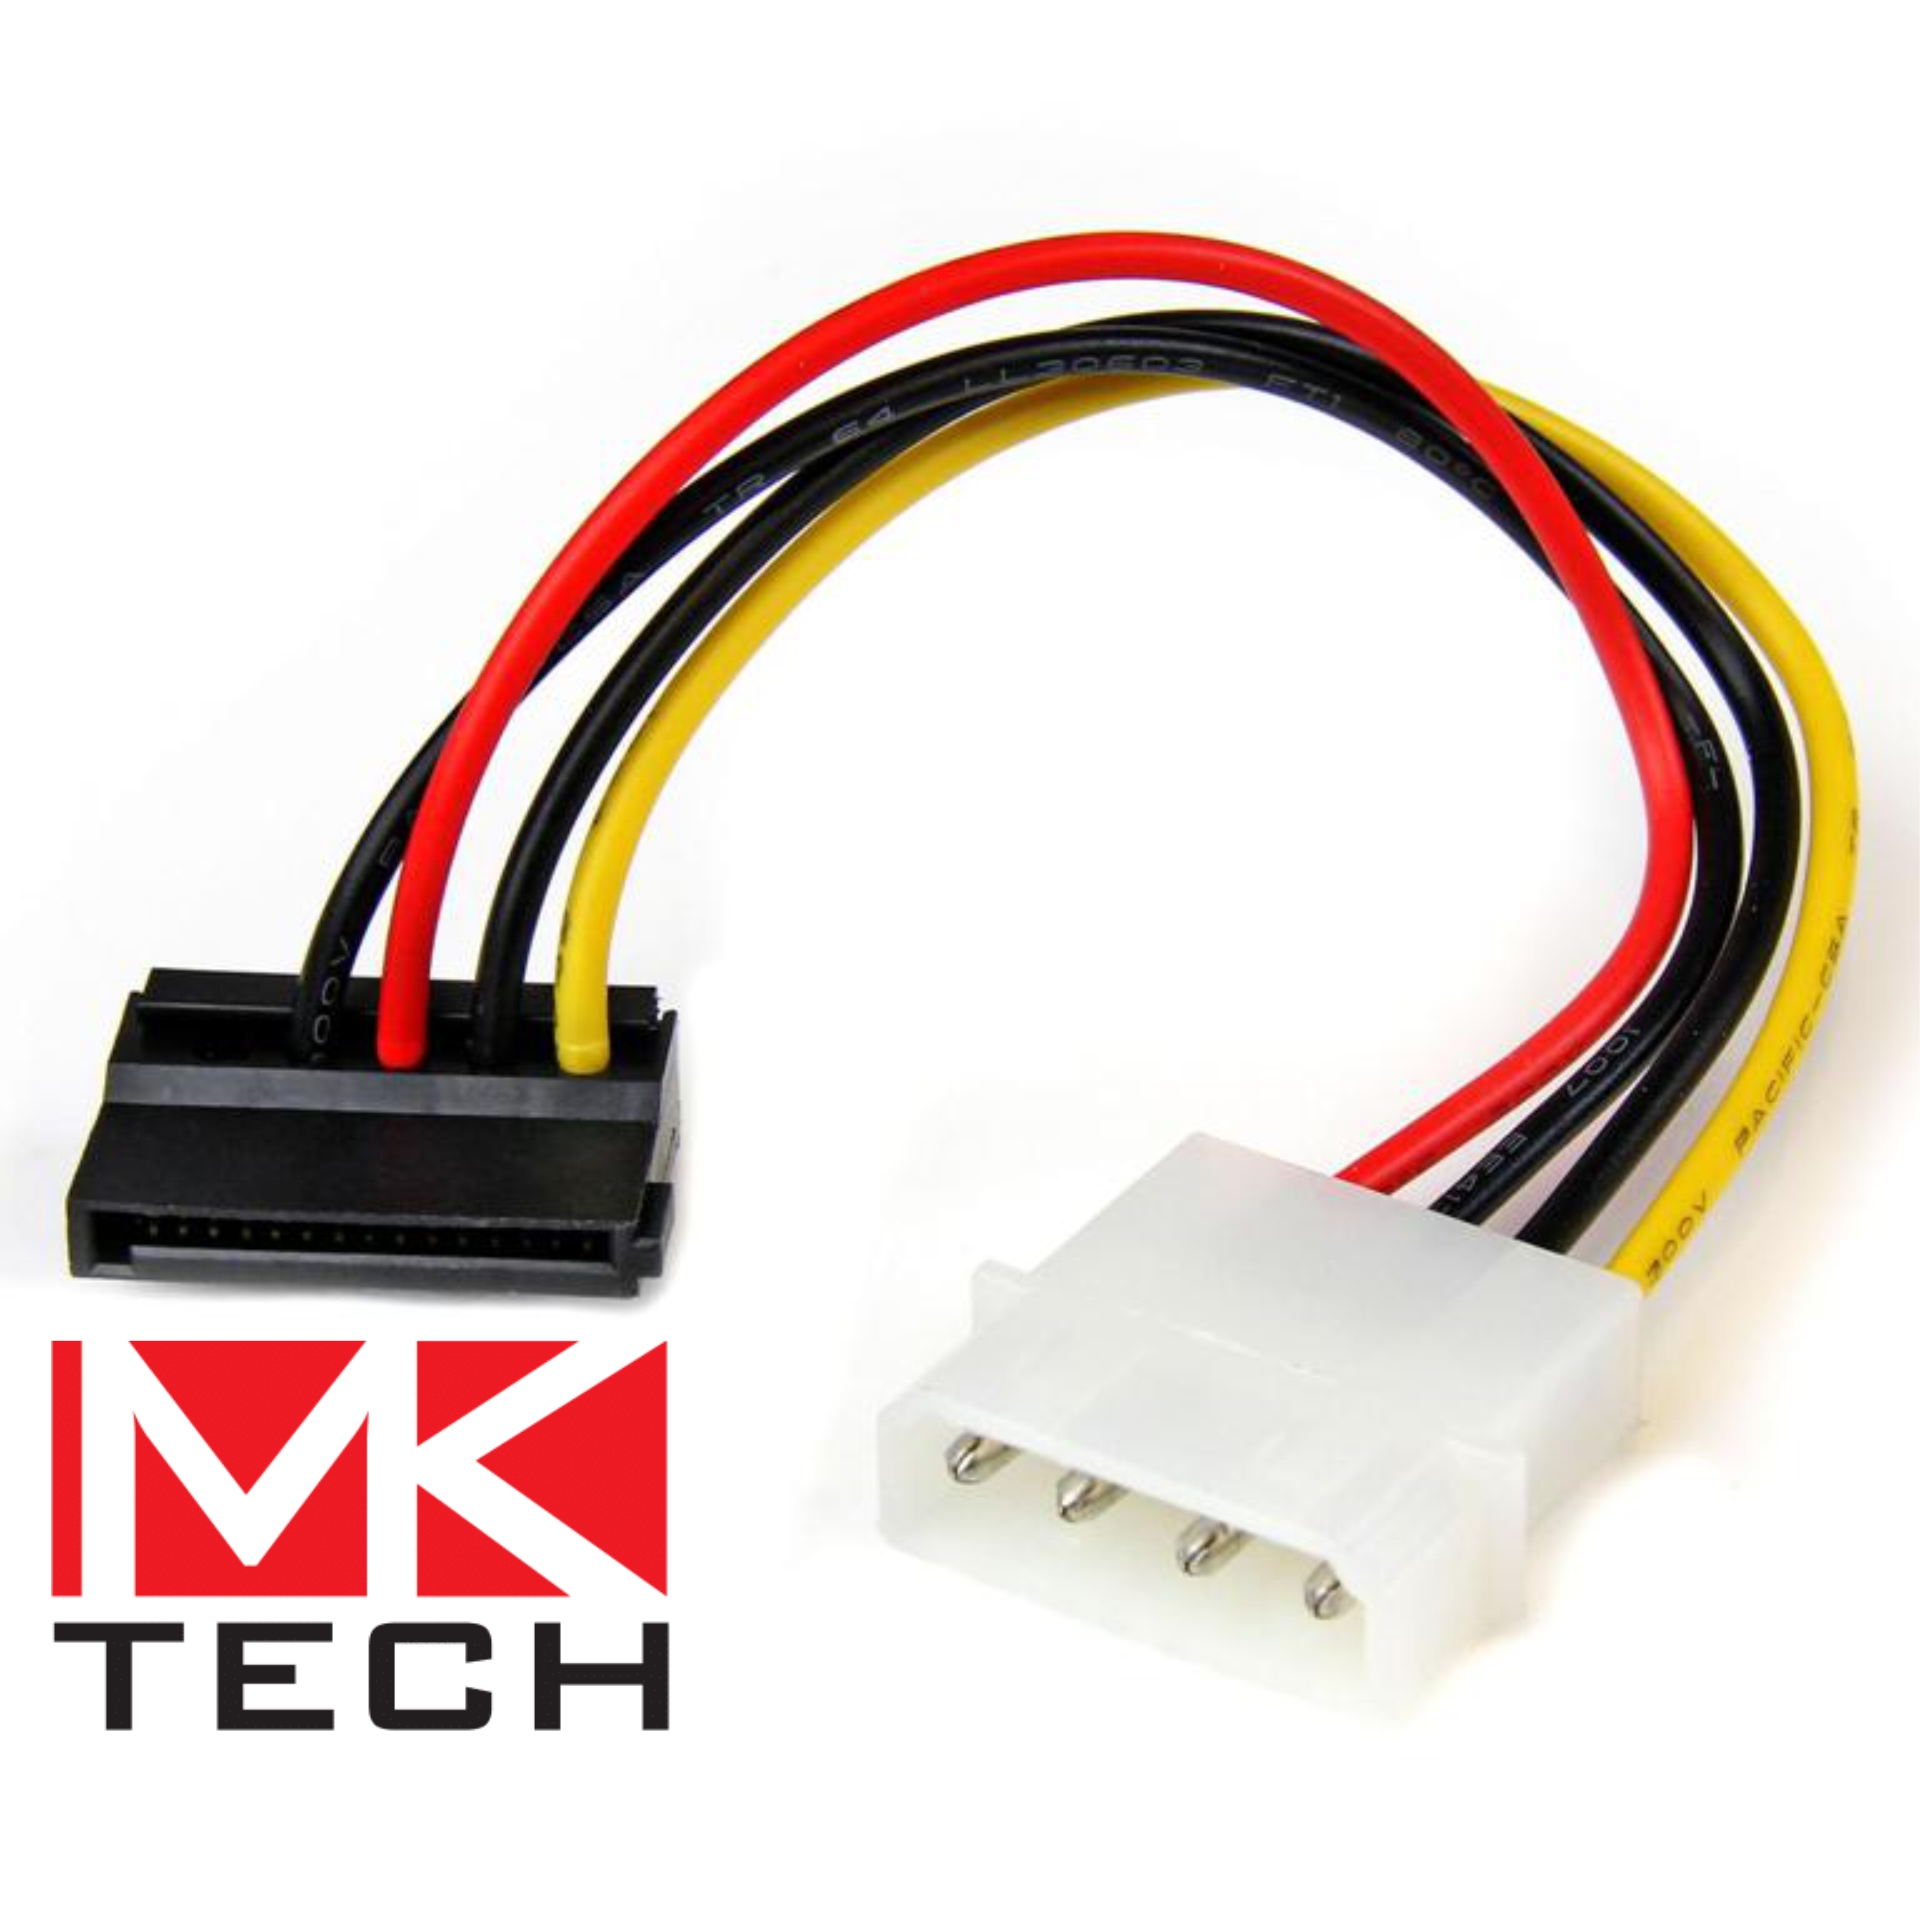 Molex to SATA Power Converter Cable MKTECH